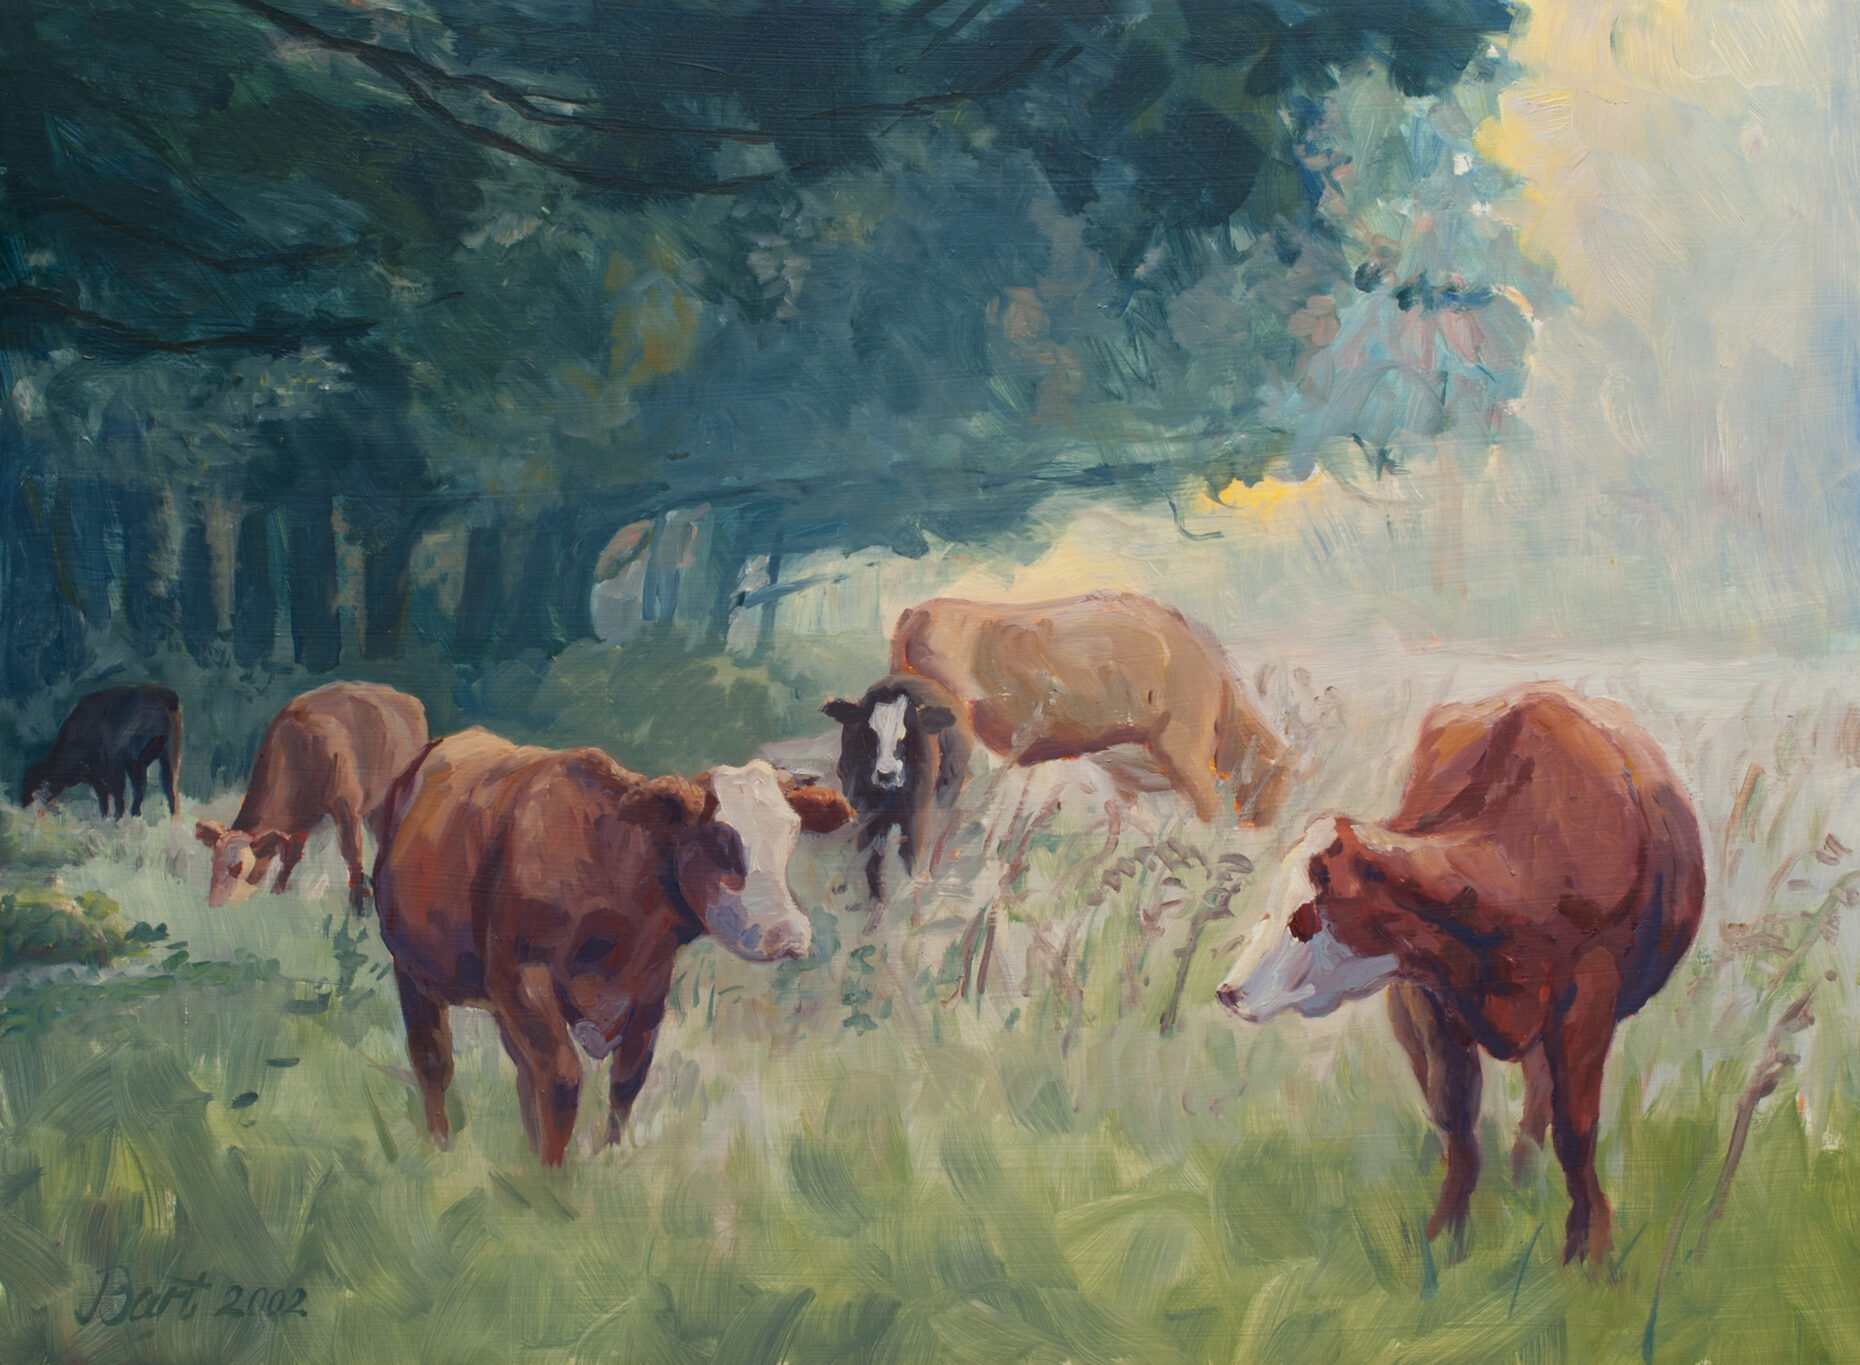 "Koeien aan de Veluwezoom in de nazomer", 2002